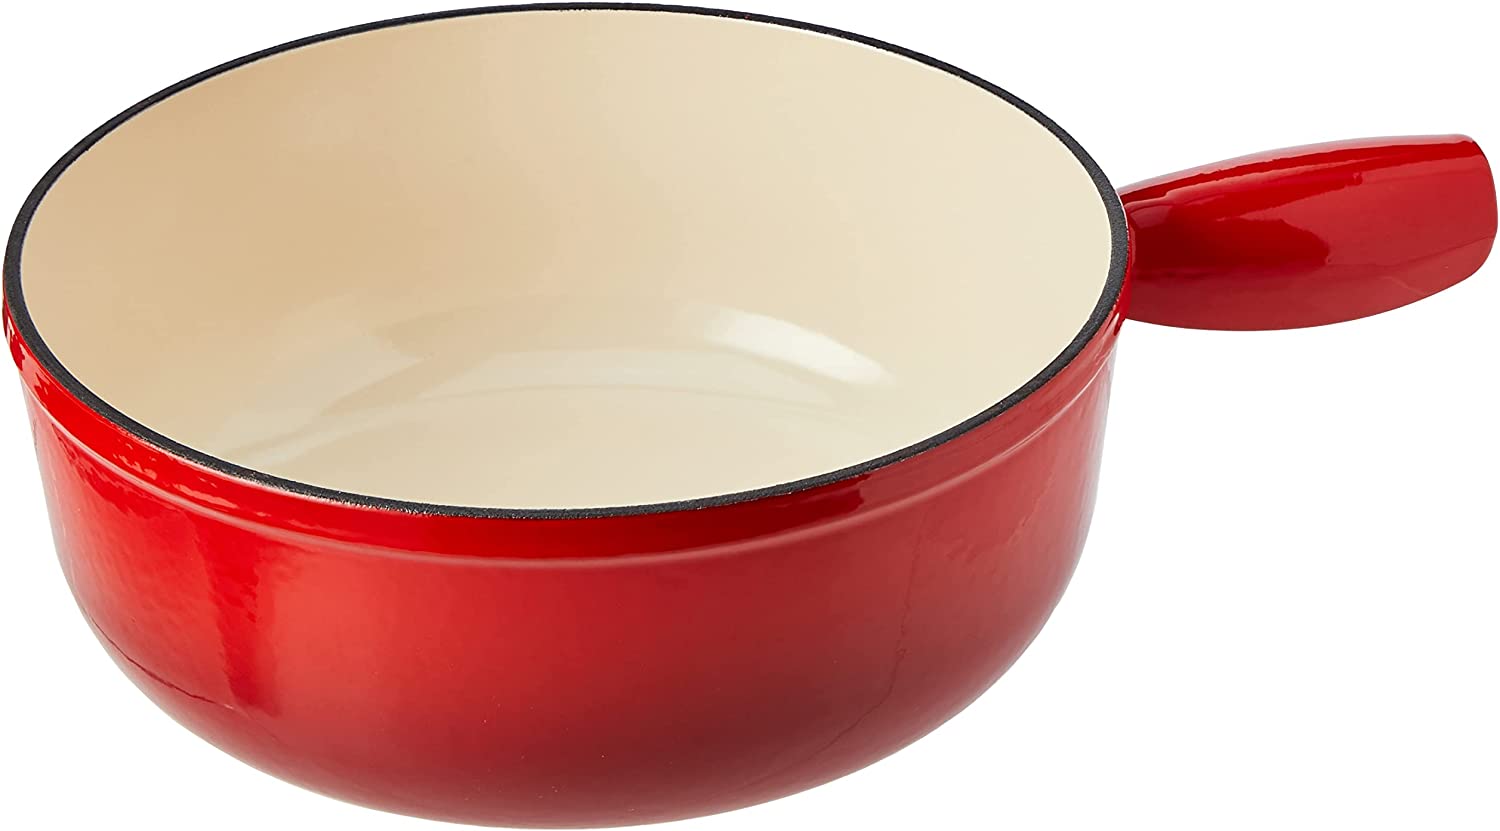 Kuhn Rikon 32056 Caquelon Fondue Pot Suitable for Induction Cookers 24 cm Cast Iron Red